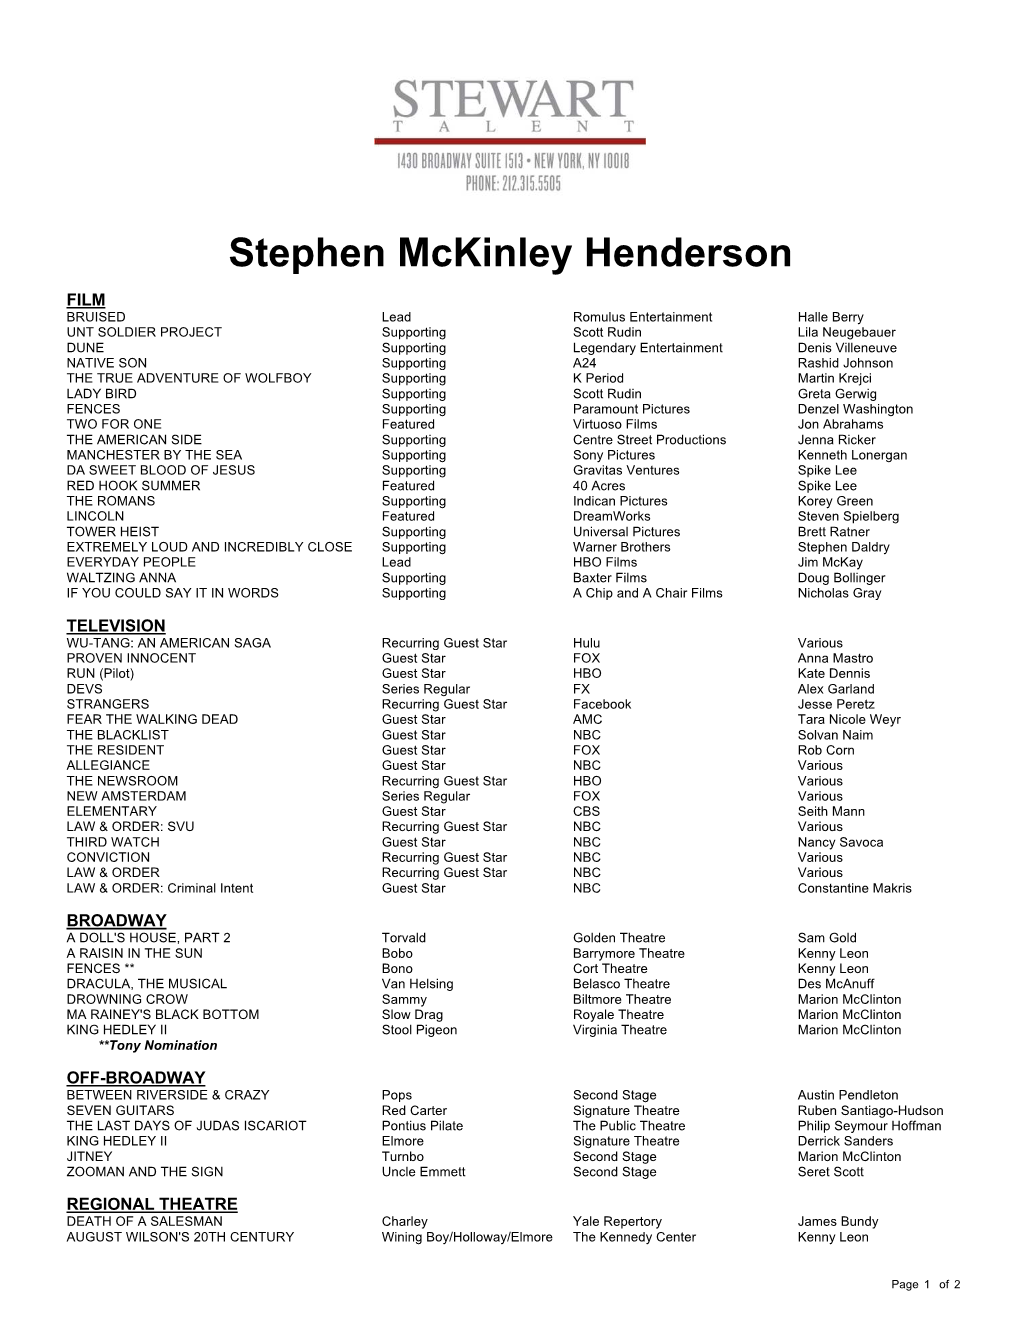 Stephen Mckinley Henderson Theatrical Resume